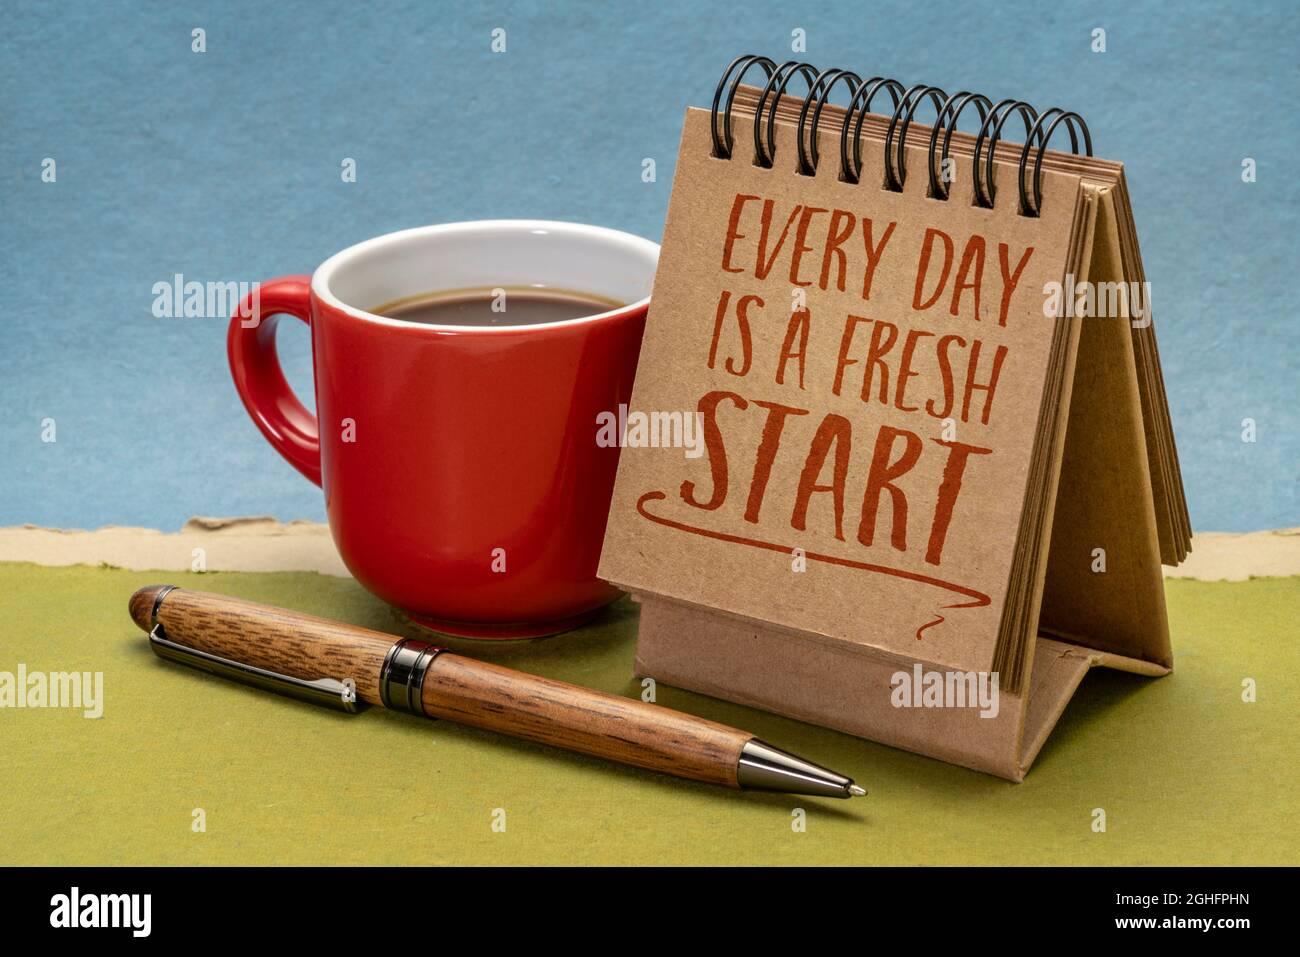 cada día es una nota inspiradora de comienzo fresco - escritura en un calendario de escritorio con café, estilo de vida, optimismo, positividad y desarrollo personal Foto de stock